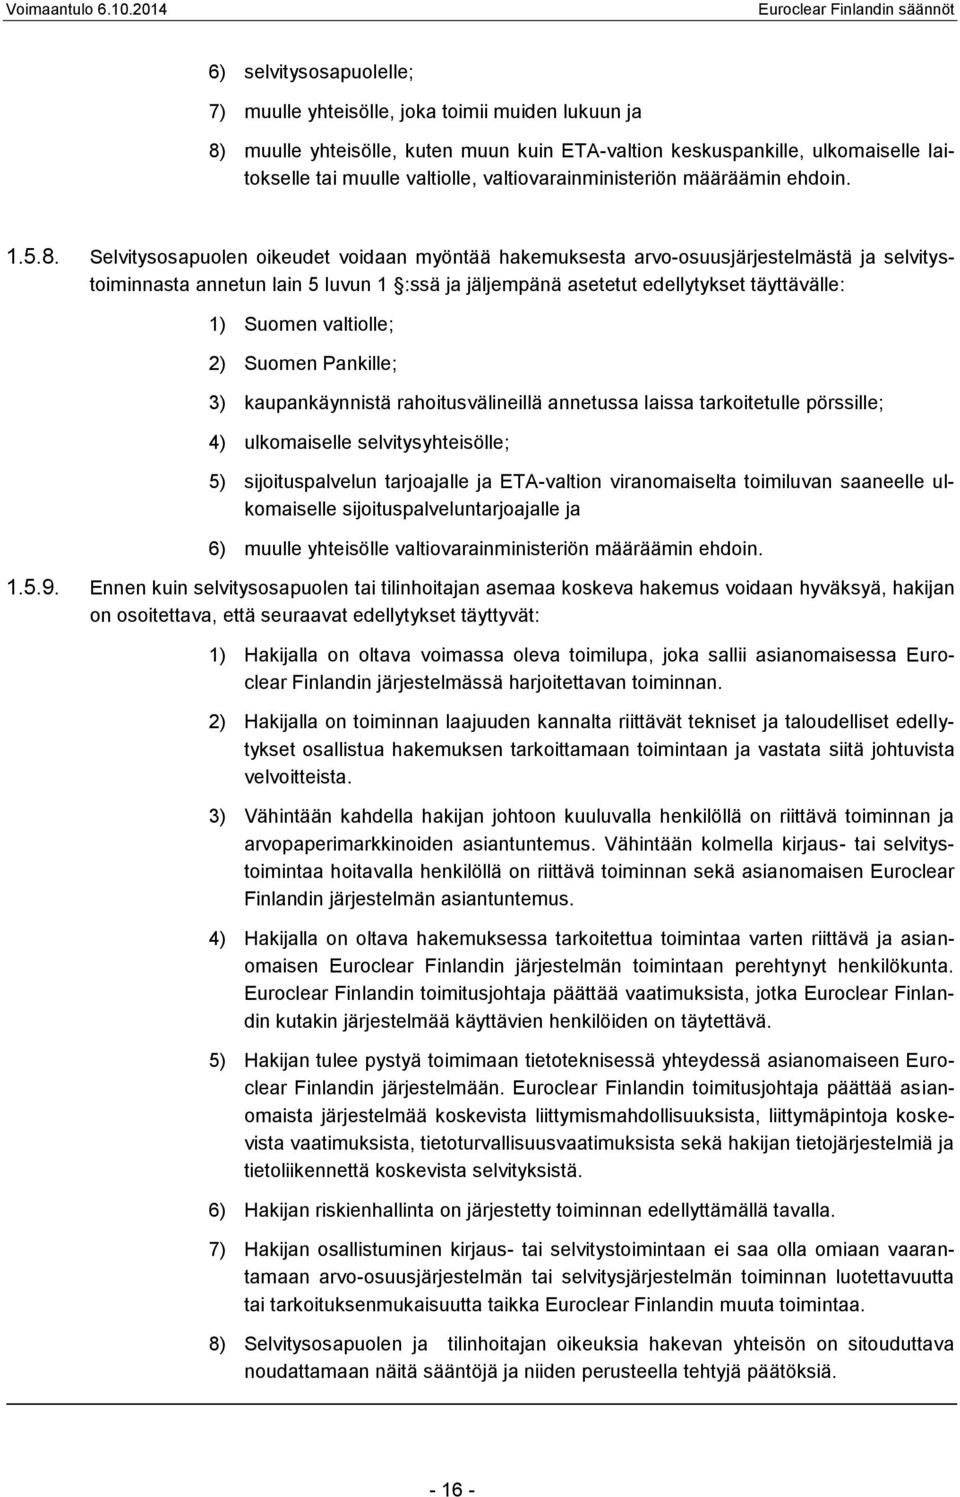 Selvitysosapuolen oikeudet voidaan myöntää hakemuksesta arvo-osuusjärjestelmästä ja selvitystoiminnasta annetun lain 5 luvun 1 :ssä ja jäljempänä asetetut edellytykset täyttävälle: 1) Suomen